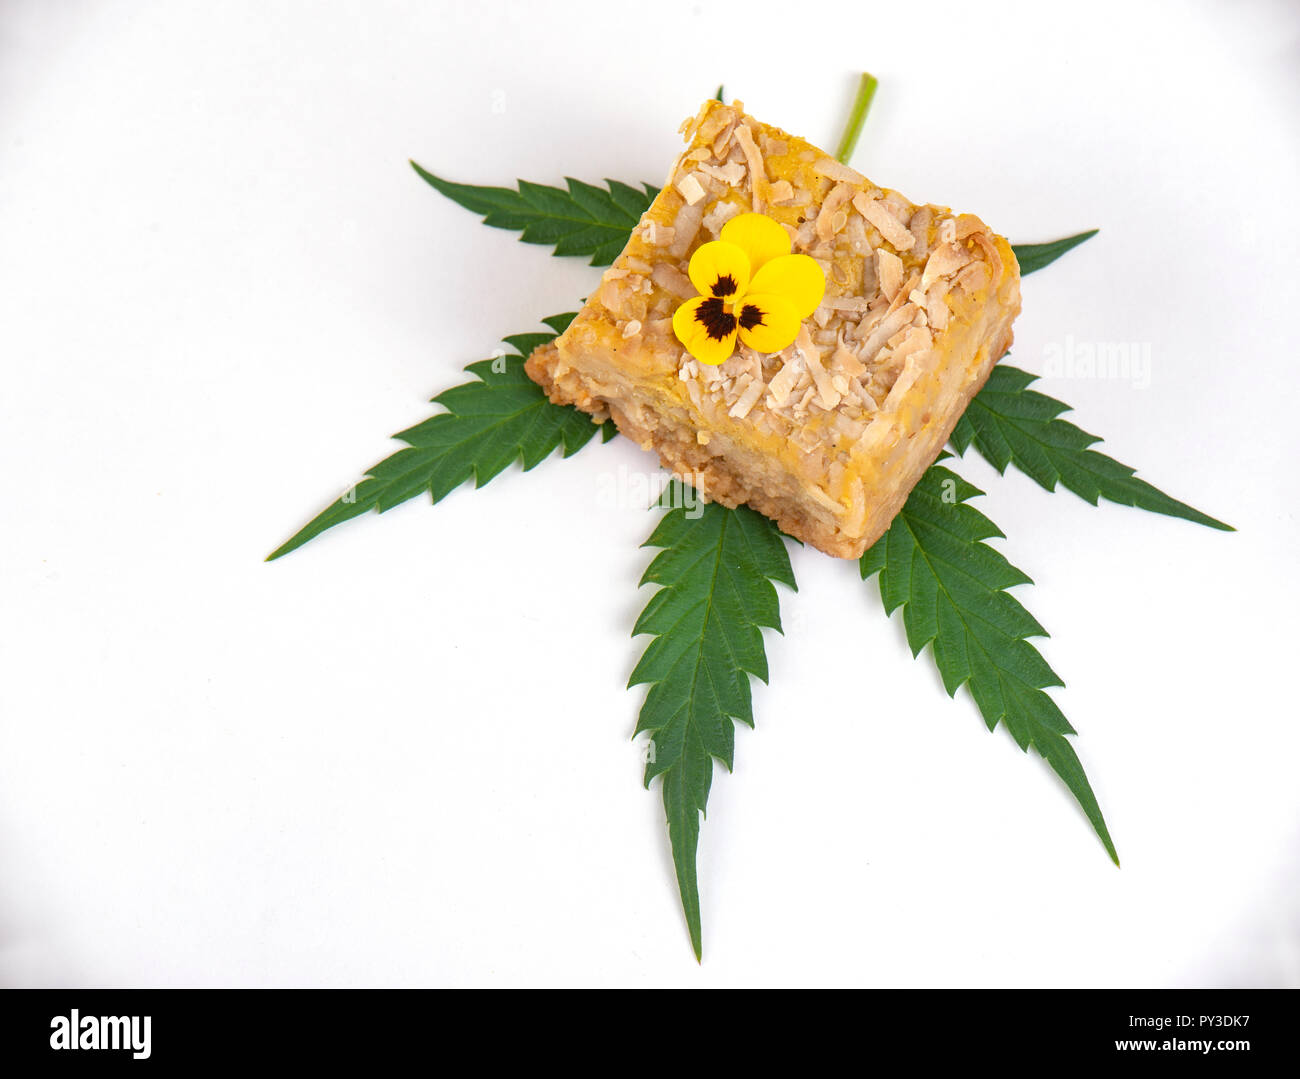 Dedtail della Cannabis infusa blondies isolati su sfondo bianco- marijuana medica concetto commestibili Foto Stock